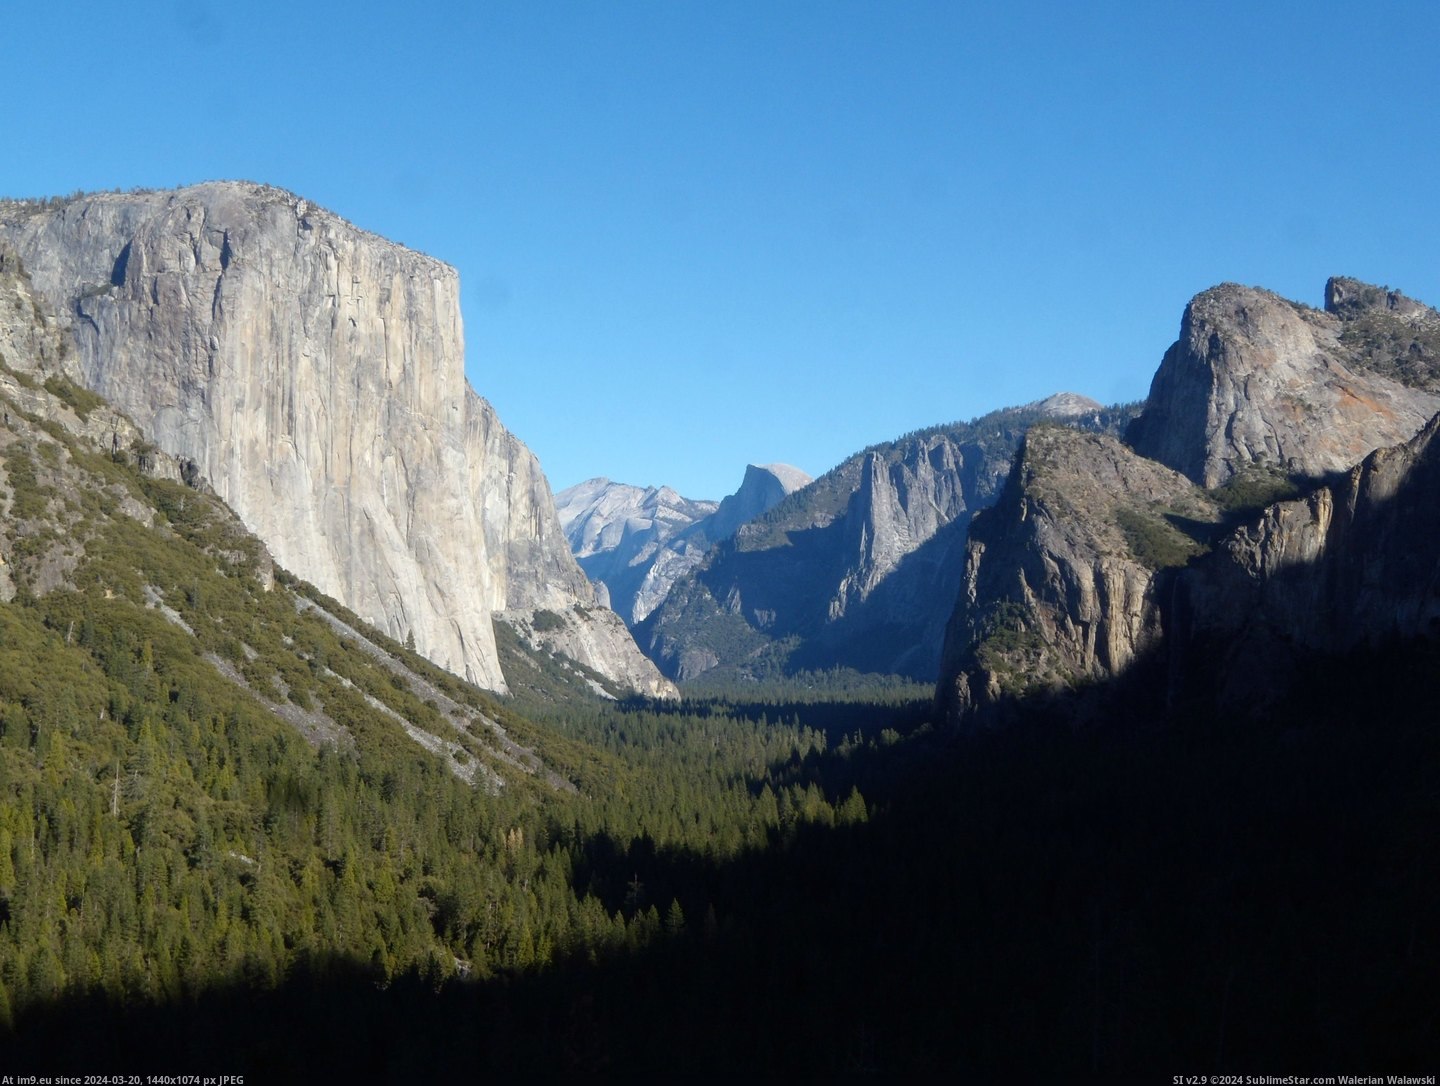 #Valley #Yosemite #Capitan #3264x2448 #Dome [Earthporn] Yosemite Valley, El Capitan & Half Dome [3264x2448] Pic. (Изображение из альбом My r/EARTHPORN favs))